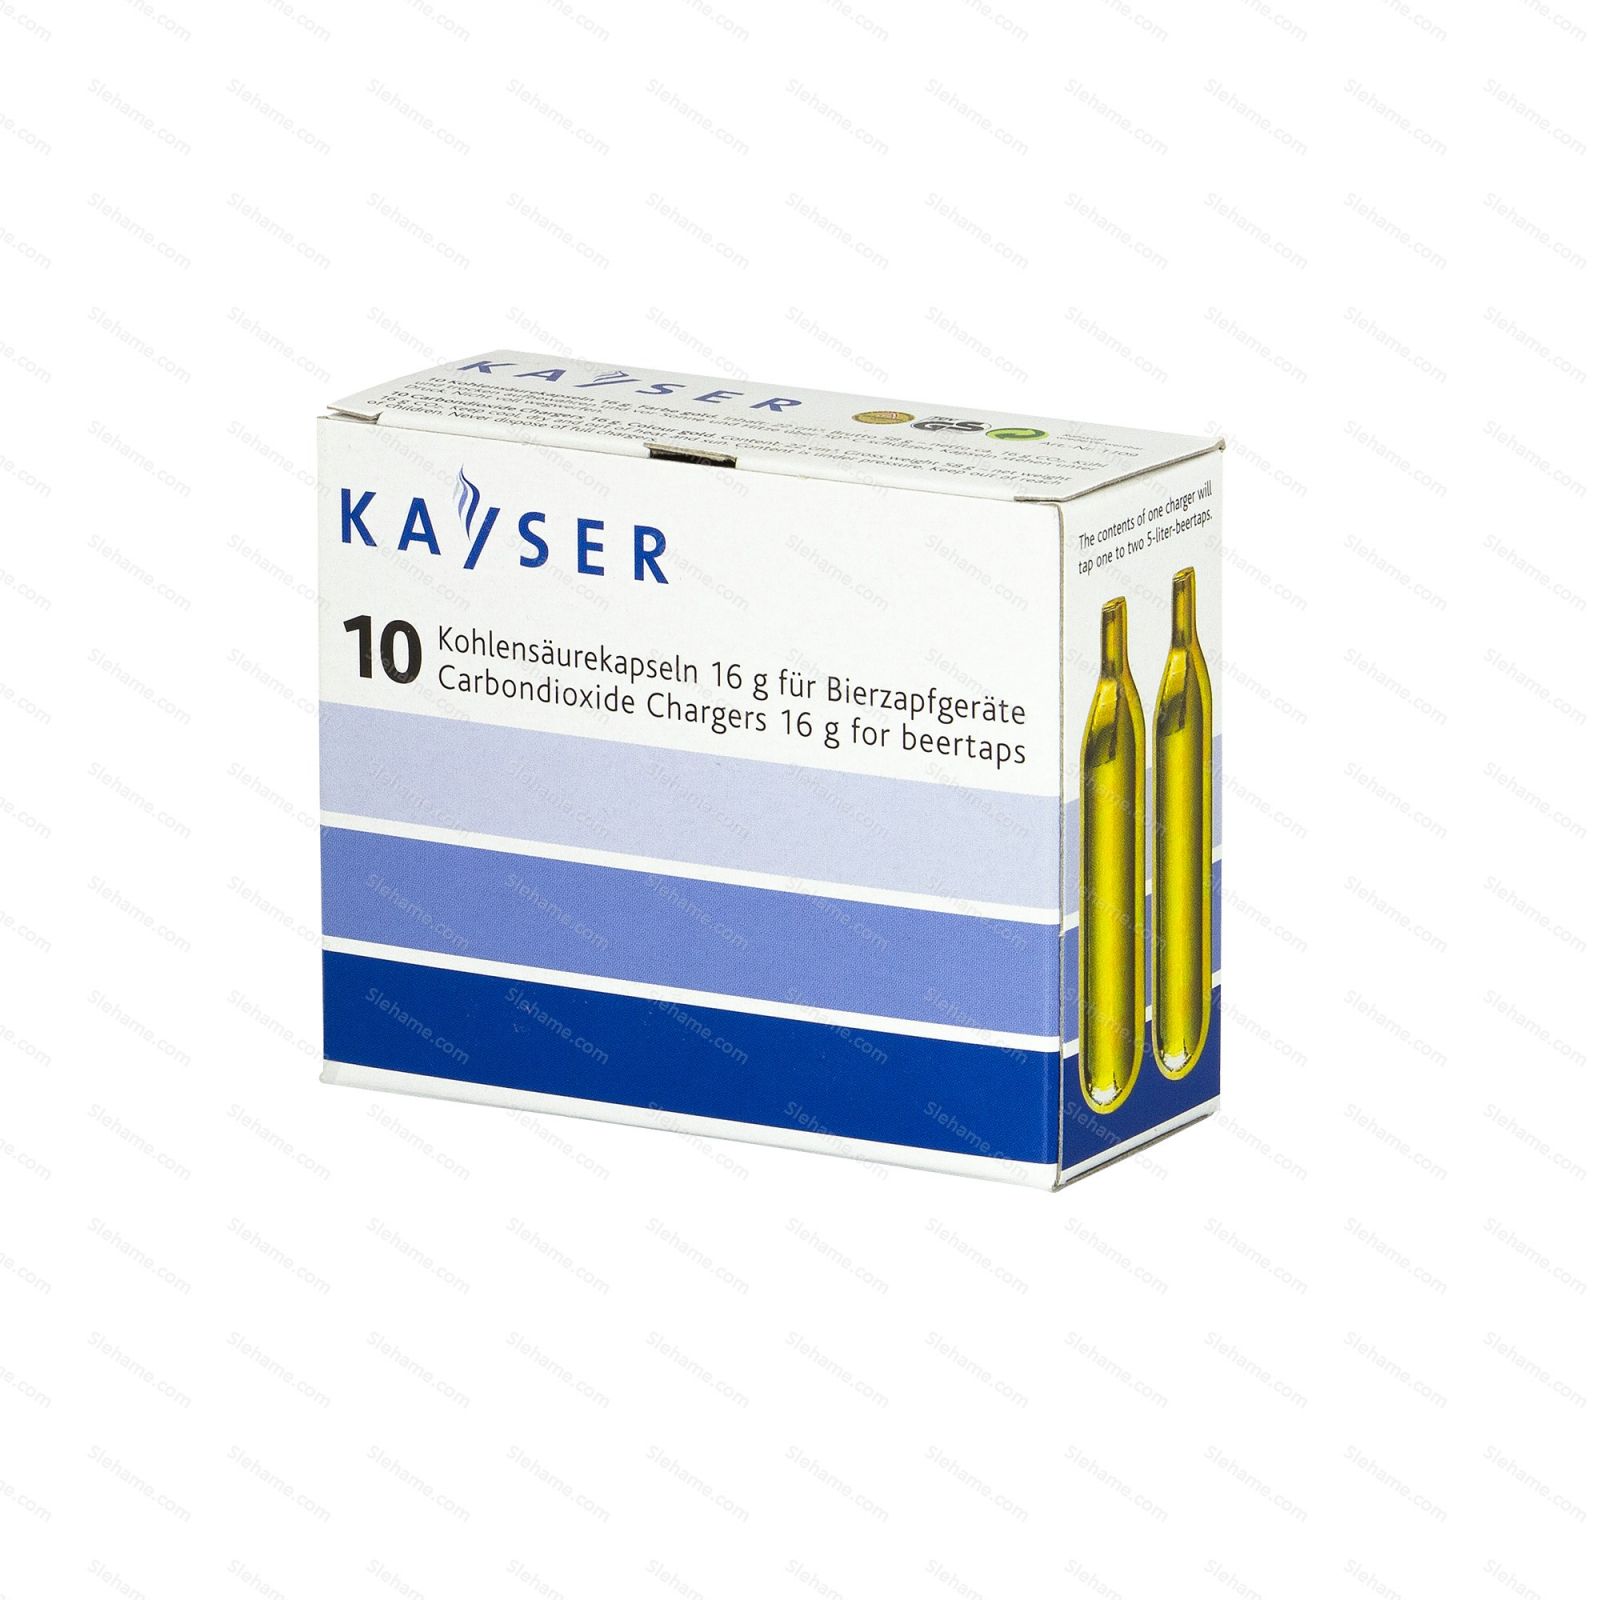 Pivní bombičky Kayser 15.25 g CO2, 10 ks (na jedno použití) - hlavní pohled